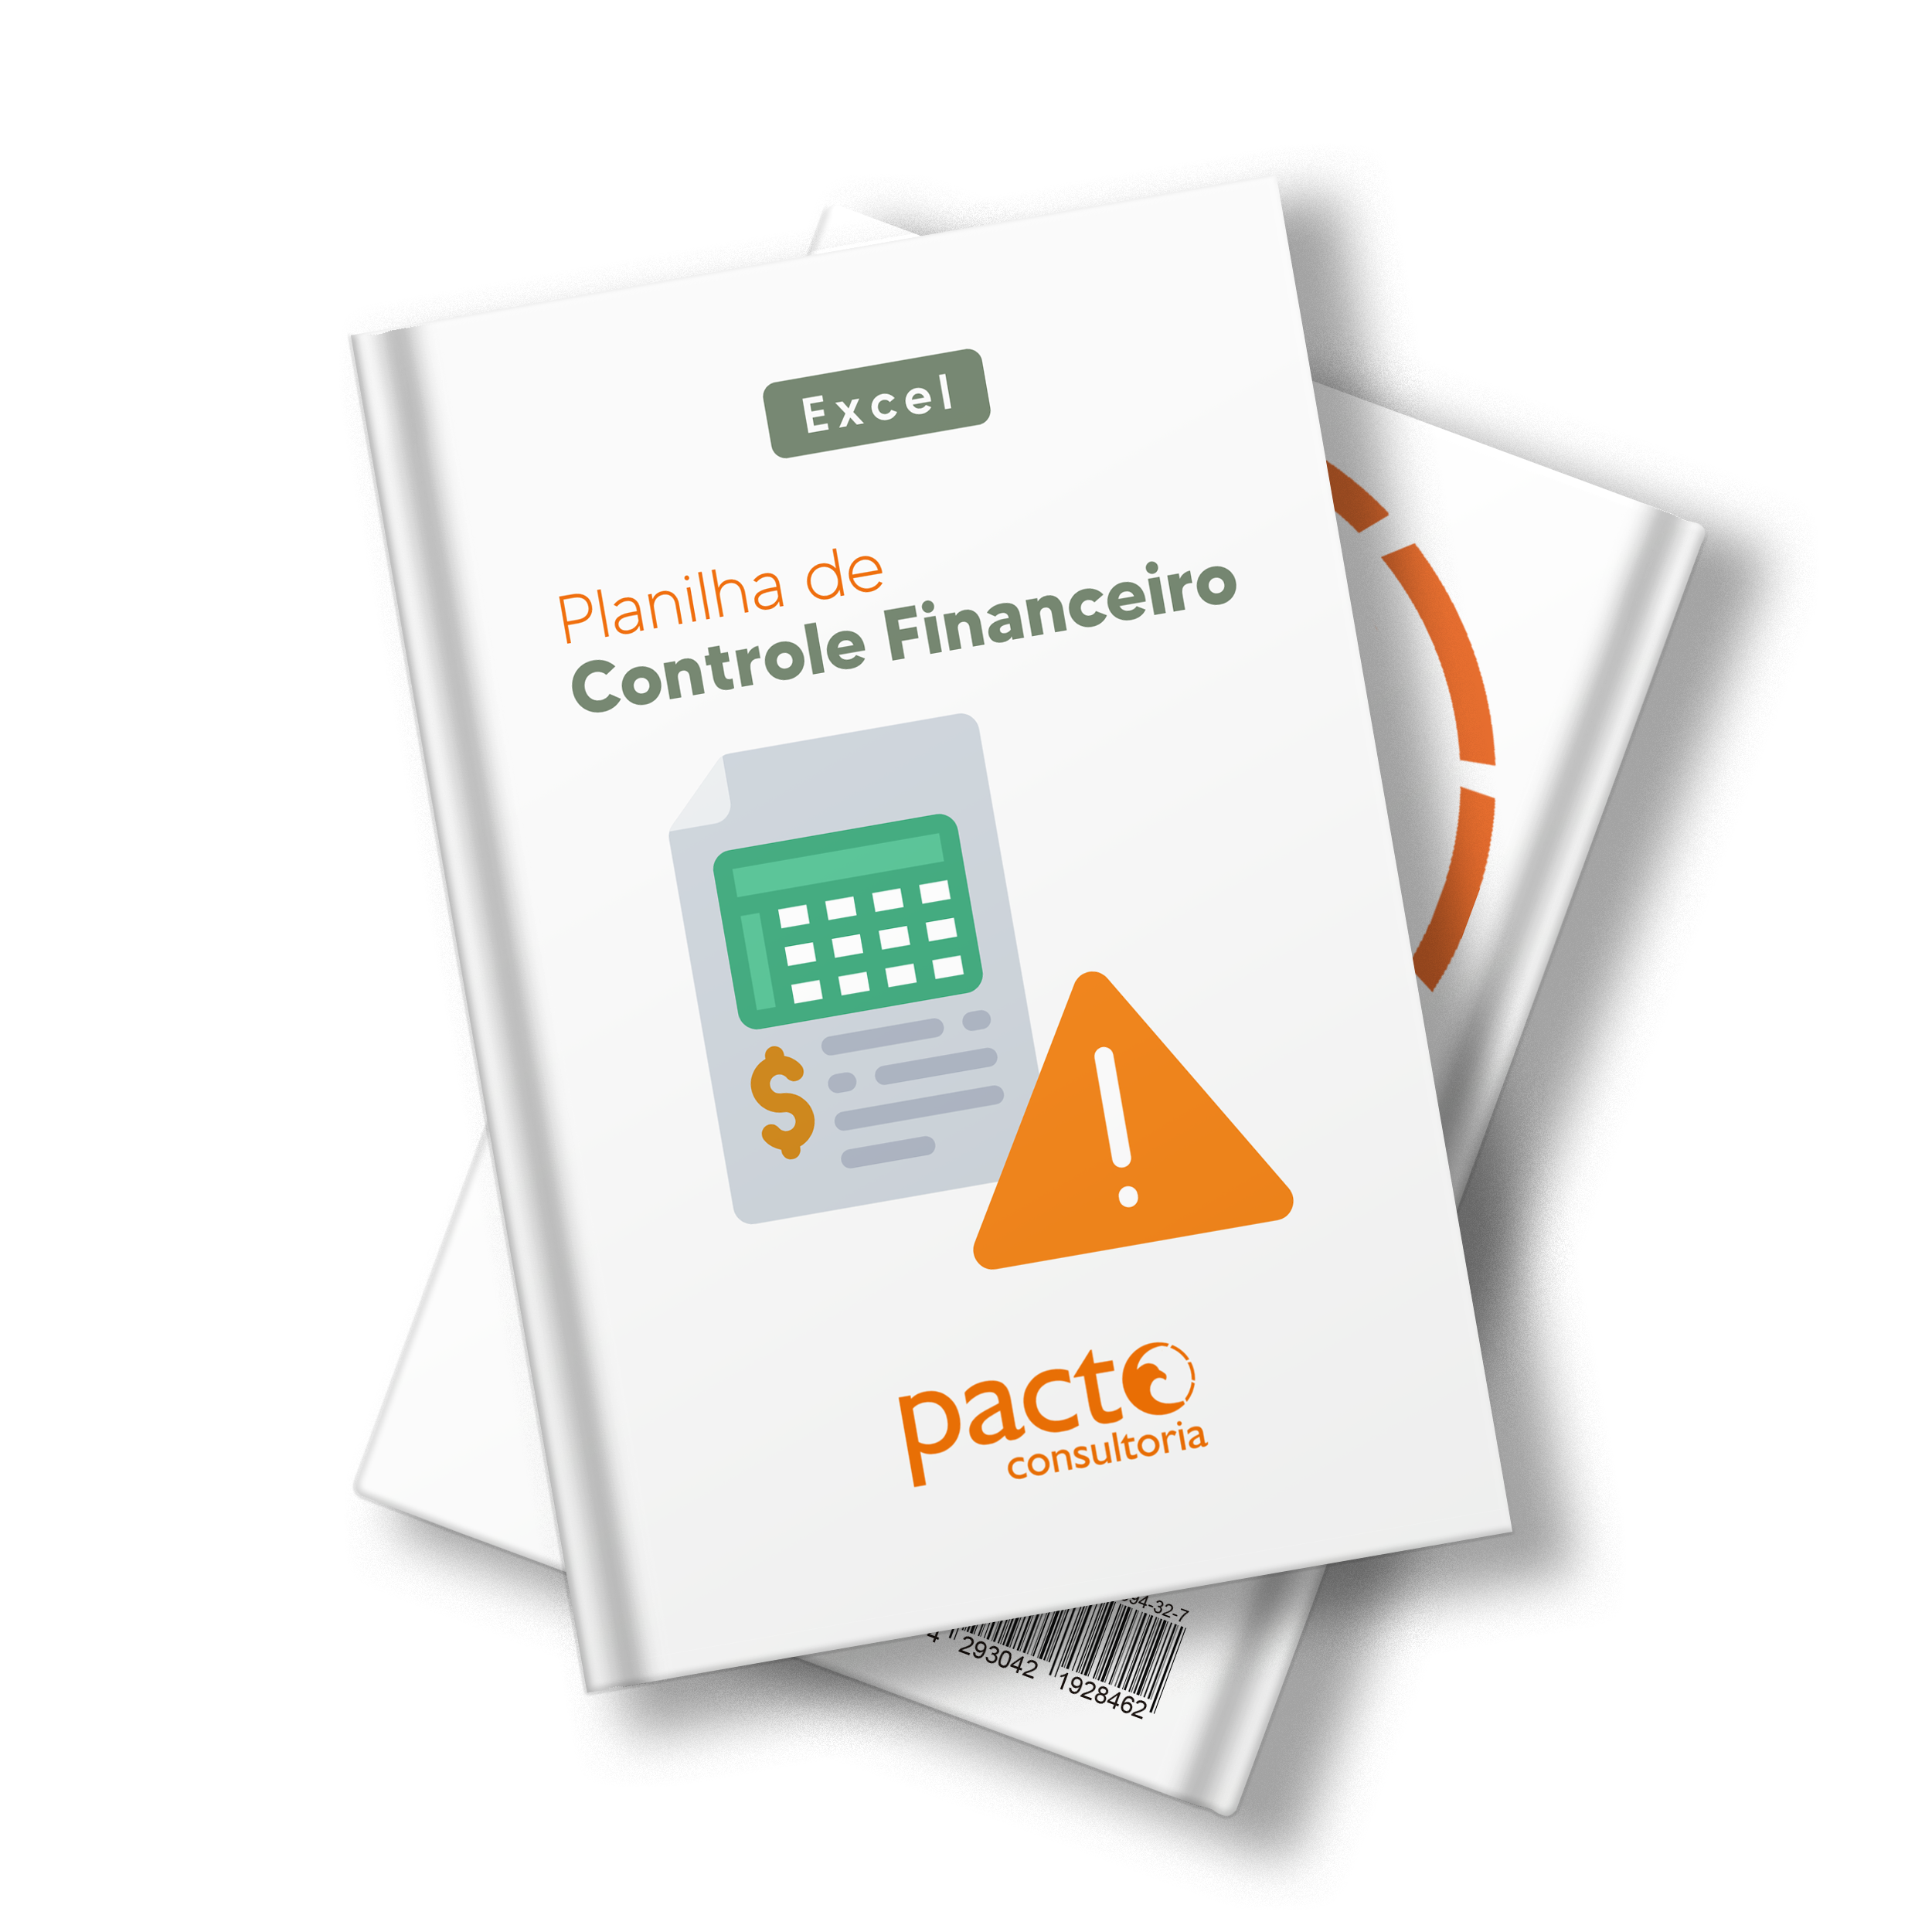 Planilha Modelo De Controle Financeiro Pacto Consultoria Jr 4774